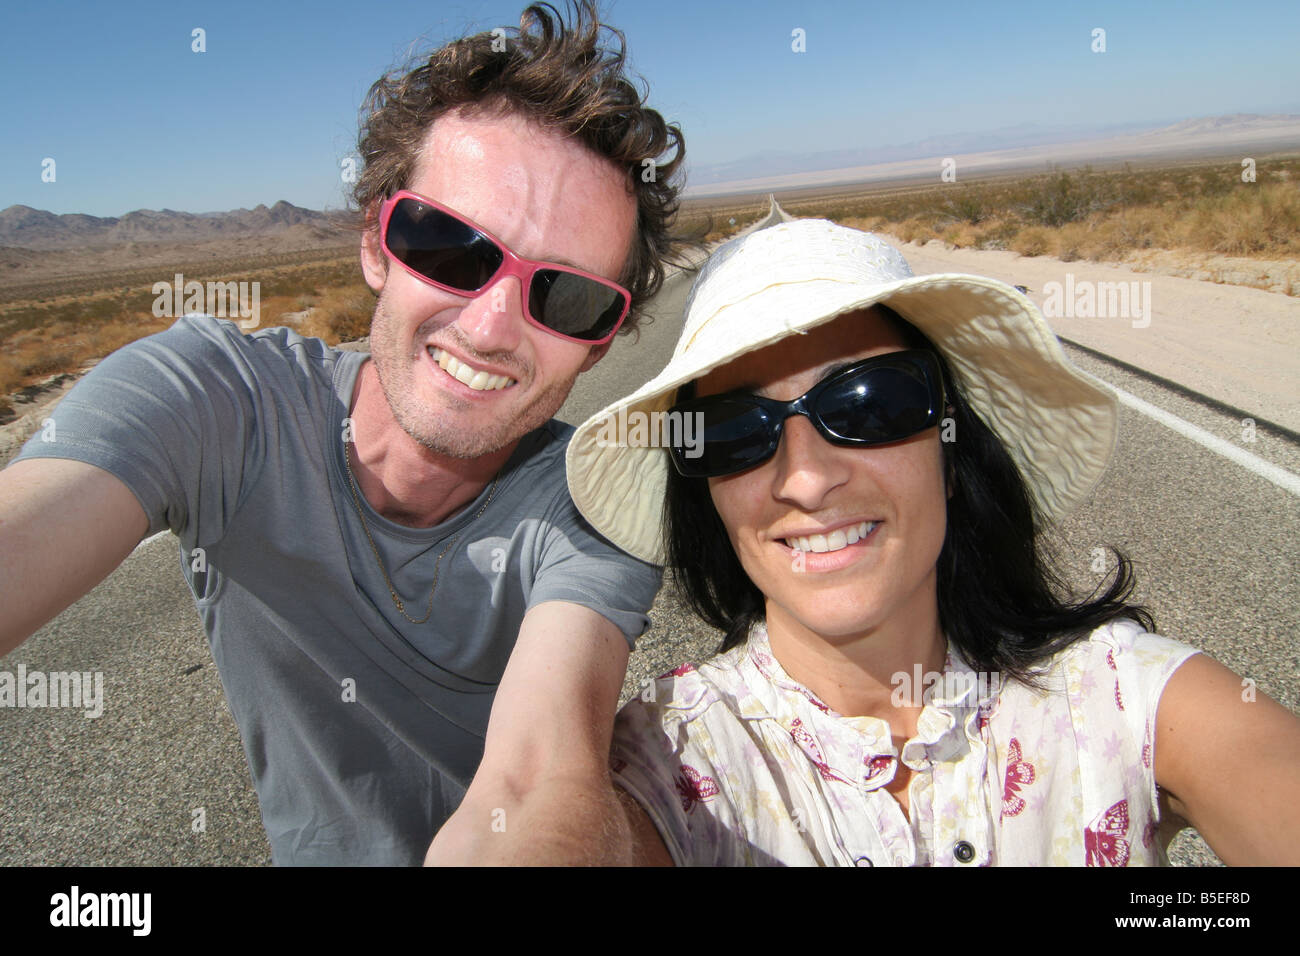 Ehemann und Ehefrau nehmen Foto von sich beim Road-Trip in Kalifornien, Vereinigte Staaten von Amerika. Stockfoto